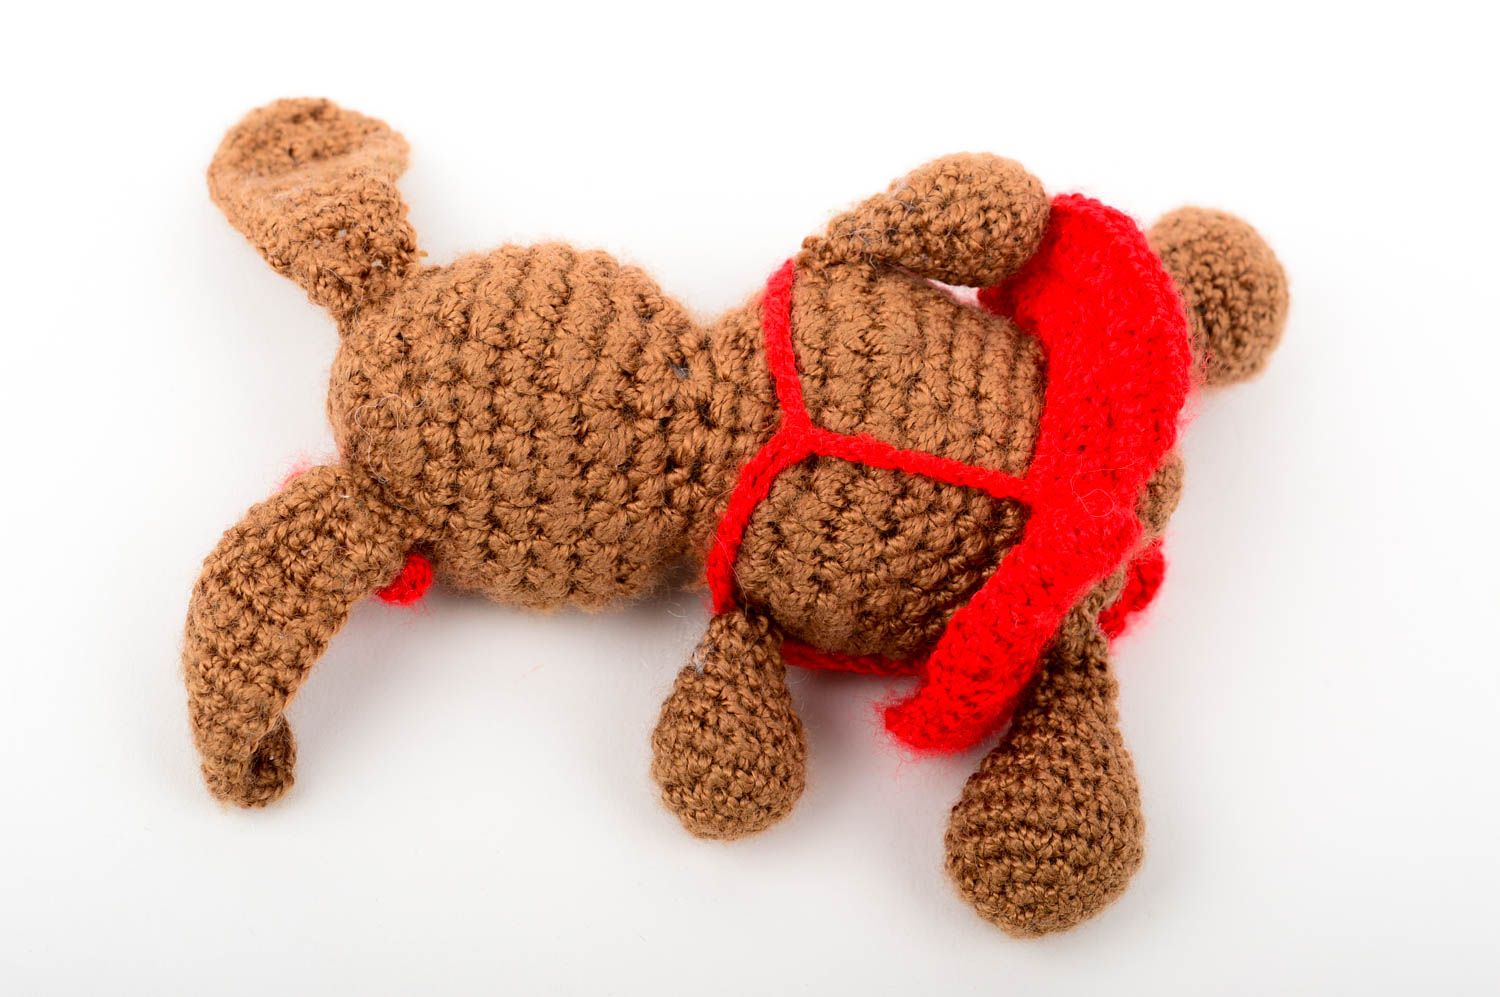 Hand-crocheted toy handmade stuffed toys for babies nursery decor crochet decor photo 4